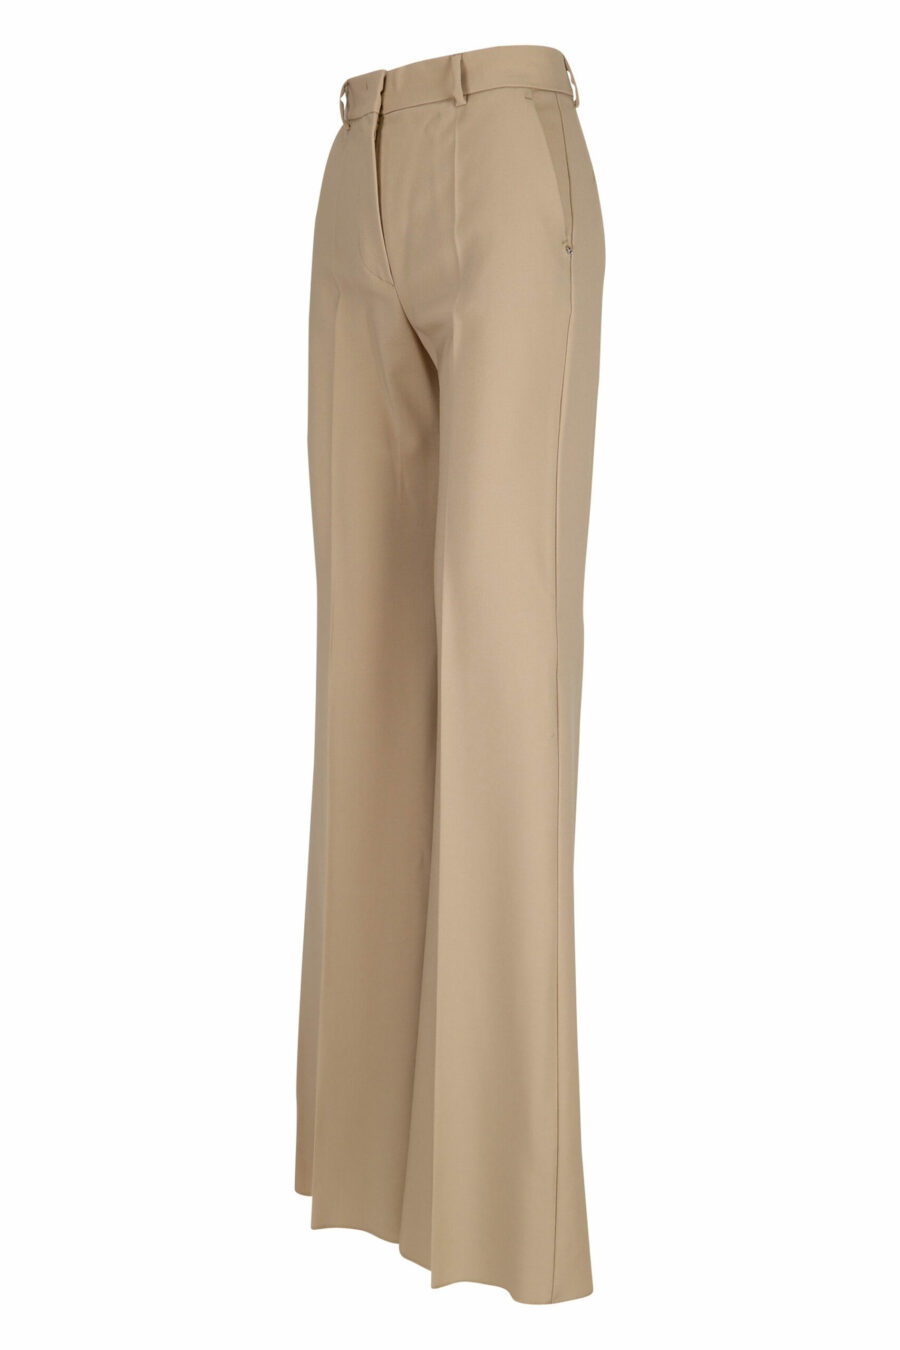 Pantalon large beige - 21310141060132 1 échelle